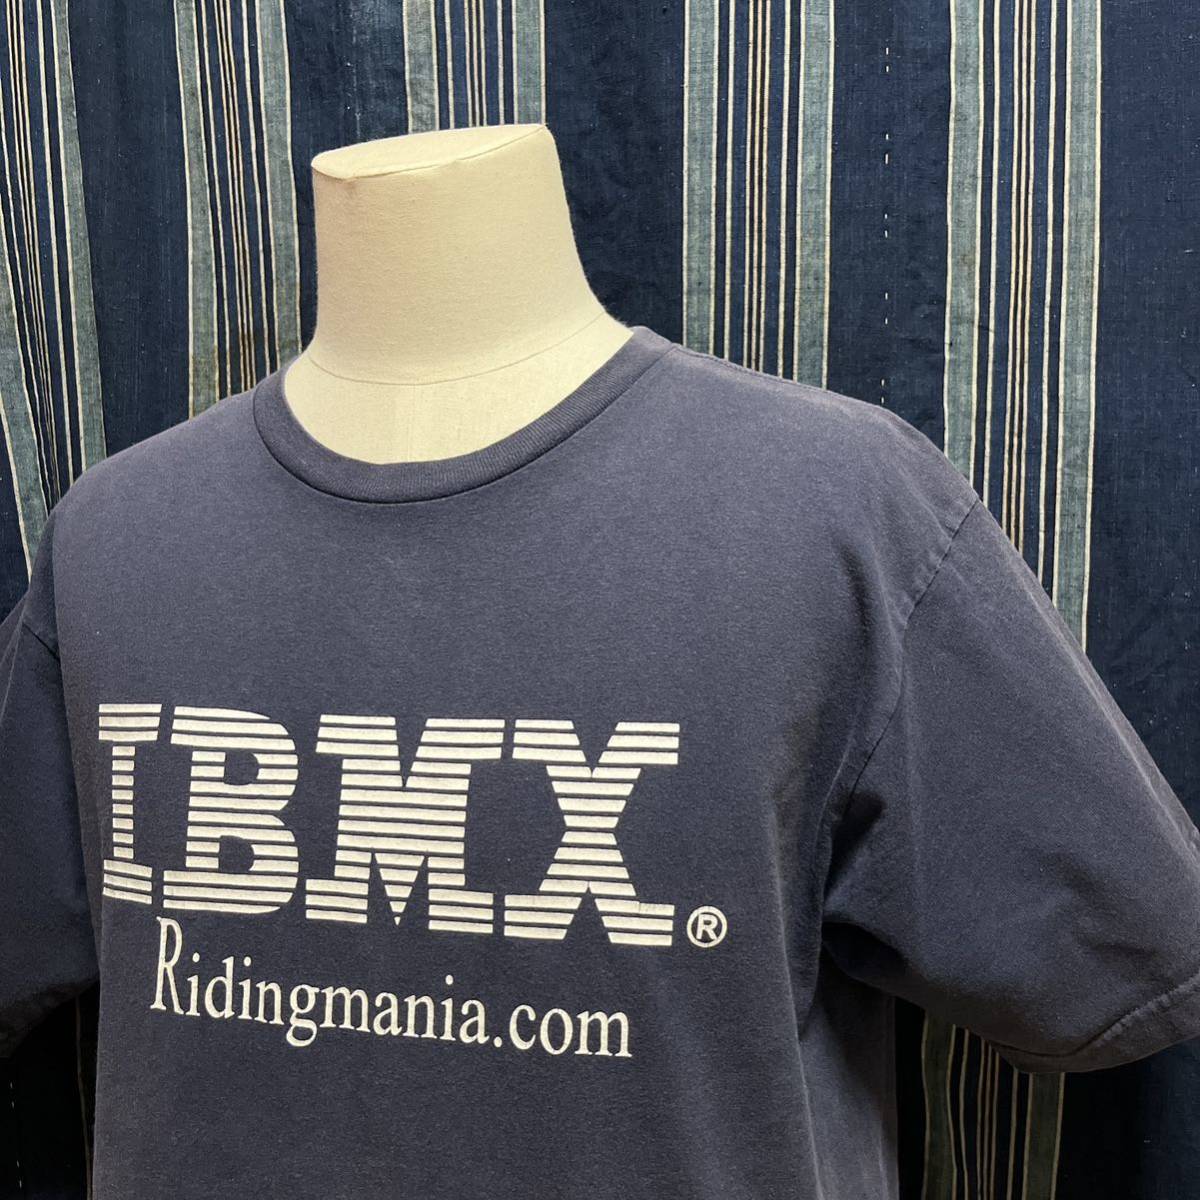 ridingmania ibmx tshirt ライディングマニア tシャツ アメリカ製 beneficial organiccotton organic オーガニックコットン 企業tシャツ m